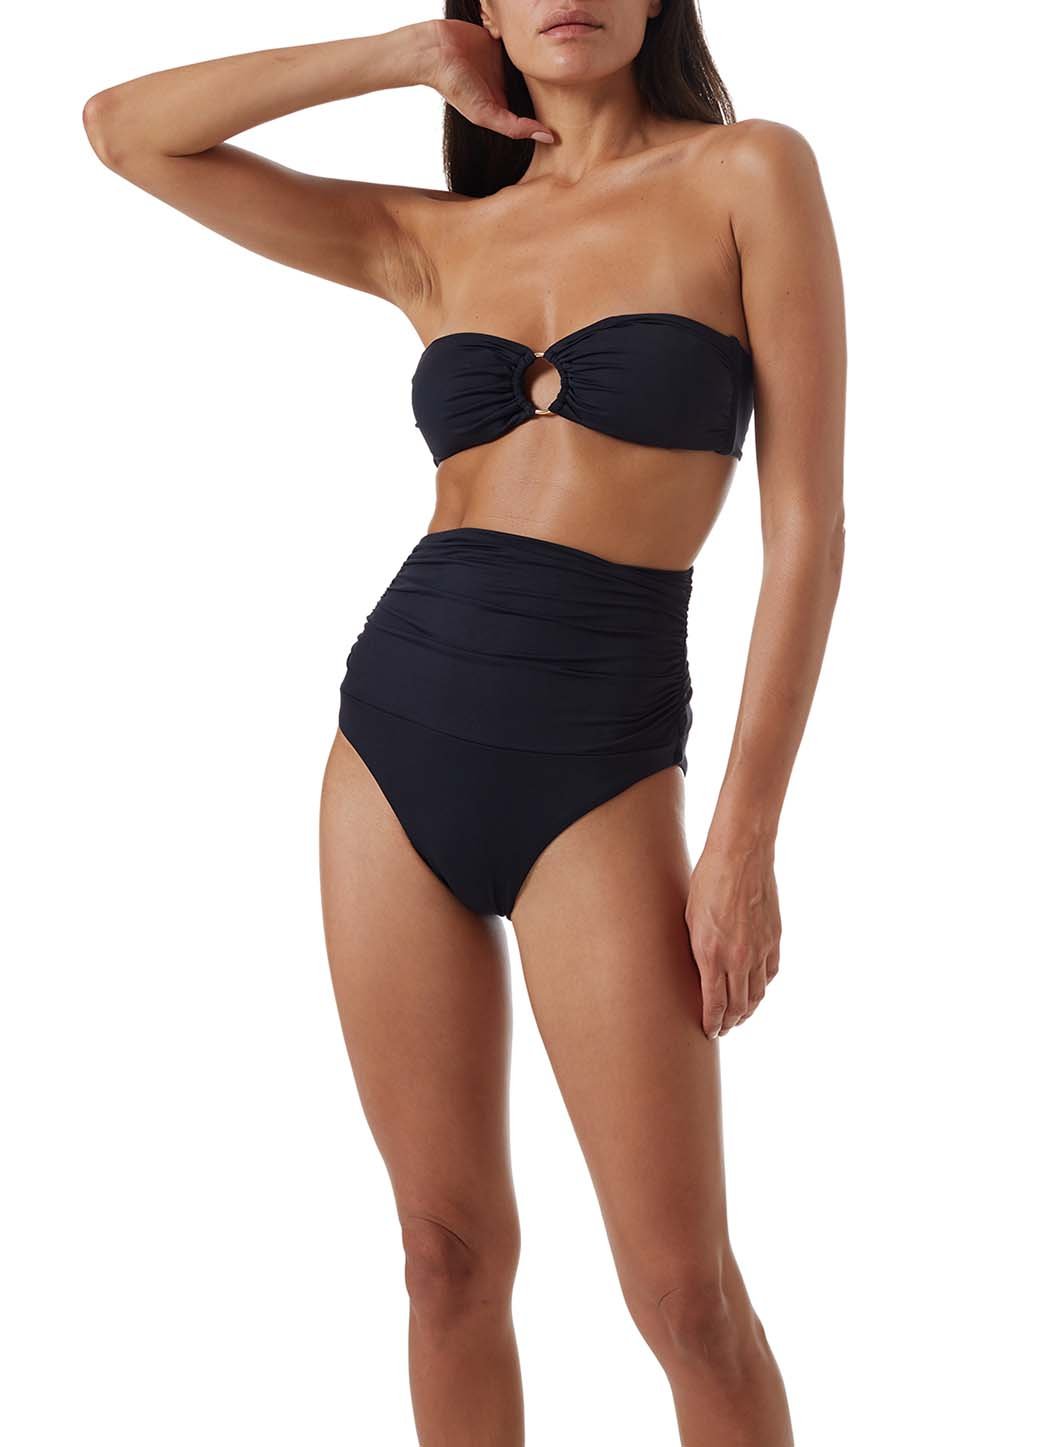 ancona-black-high-waisted-bandeau-bikini-model_P